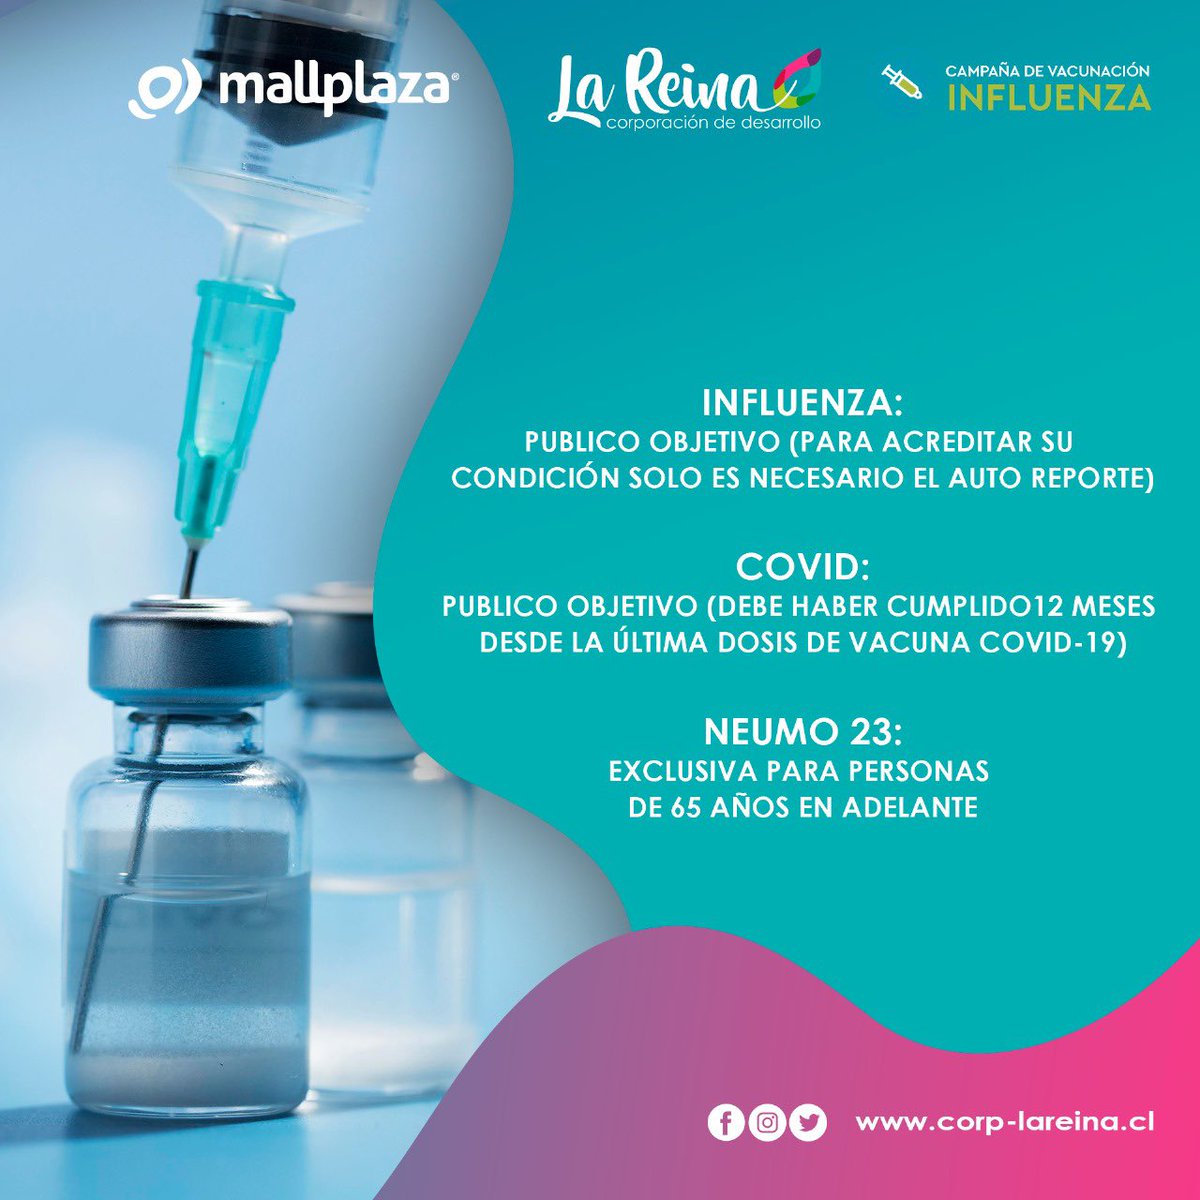 Jornada de Vacunación @MallplazaCL ✅